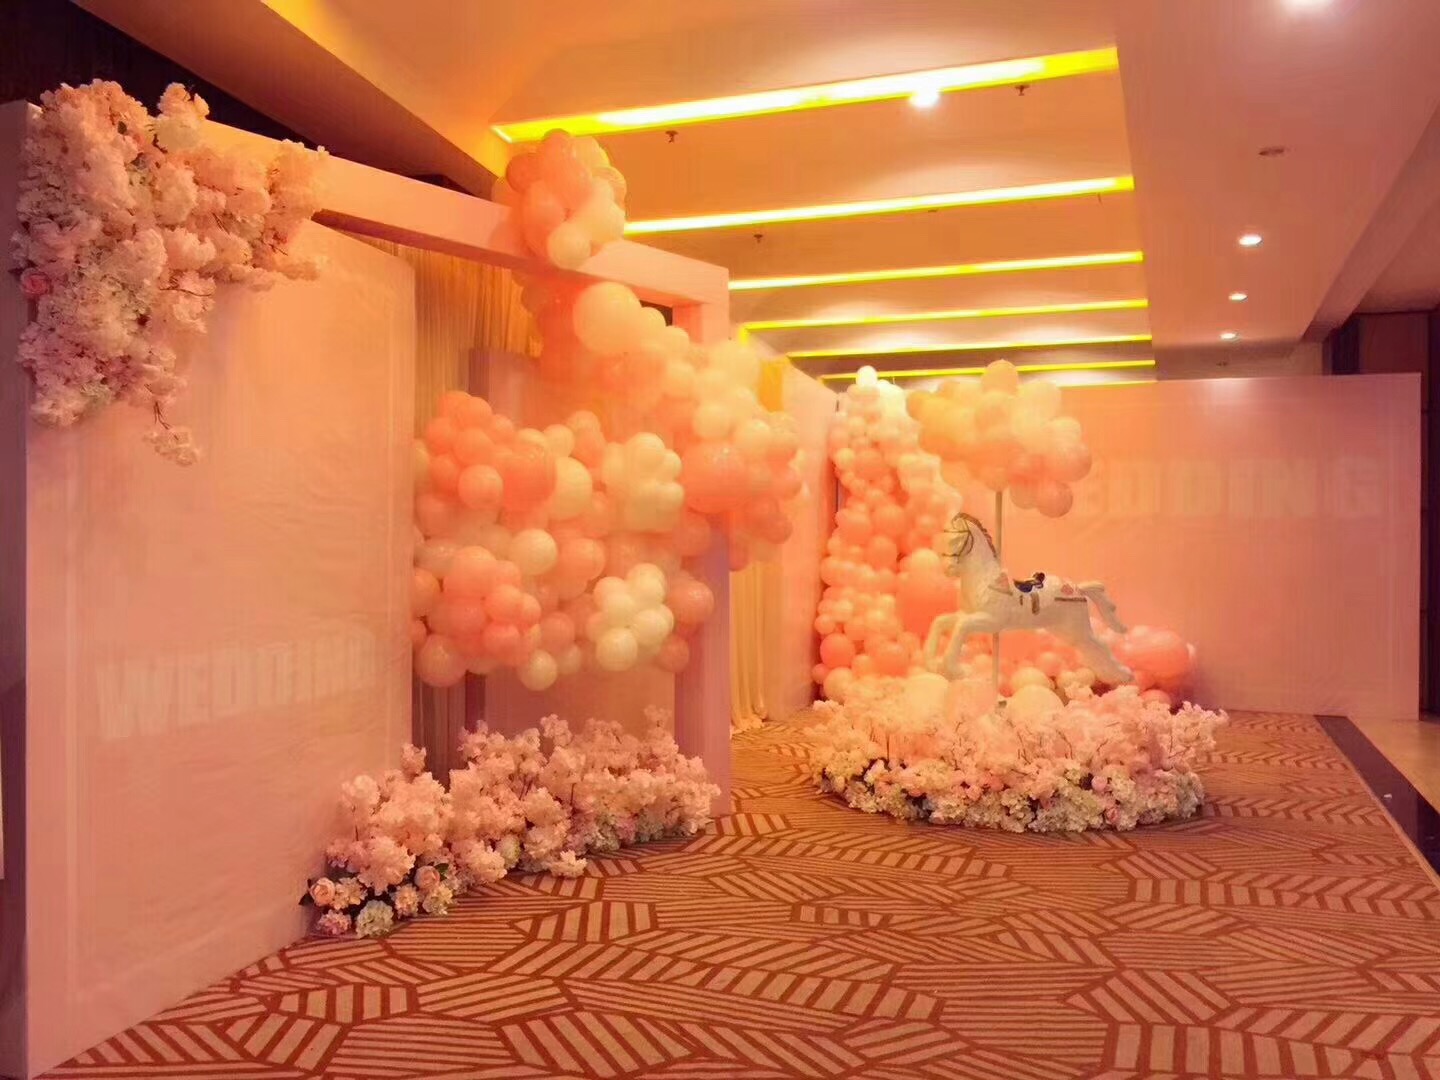 婚礼场地气球布置图|【个性婚礼定制】创意气球主题婚礼布置-丫空间